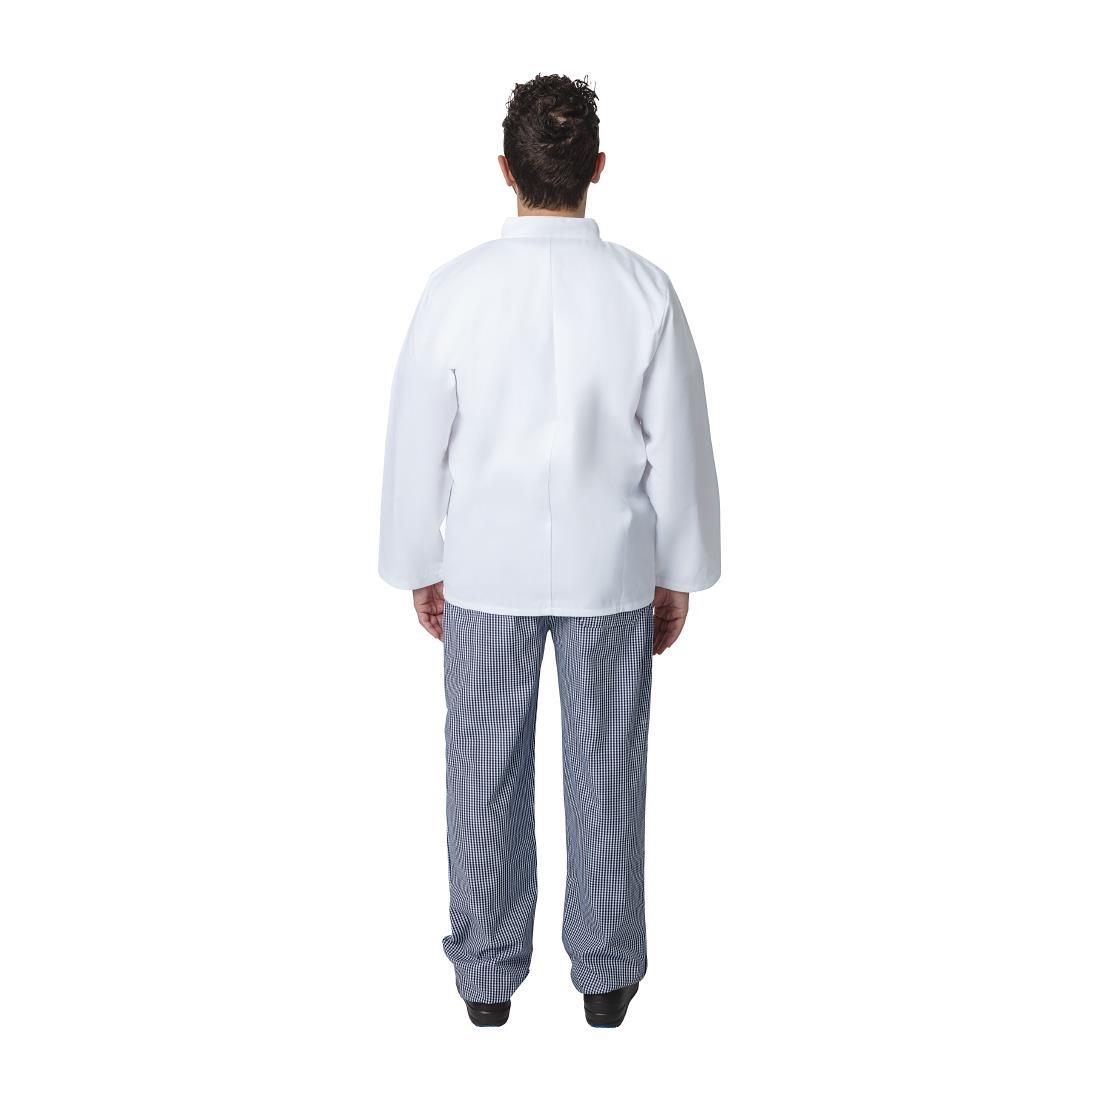 Whites Vegas Unisex Chefs Jacket Long Sleeve White XS - A134-XS  - 5